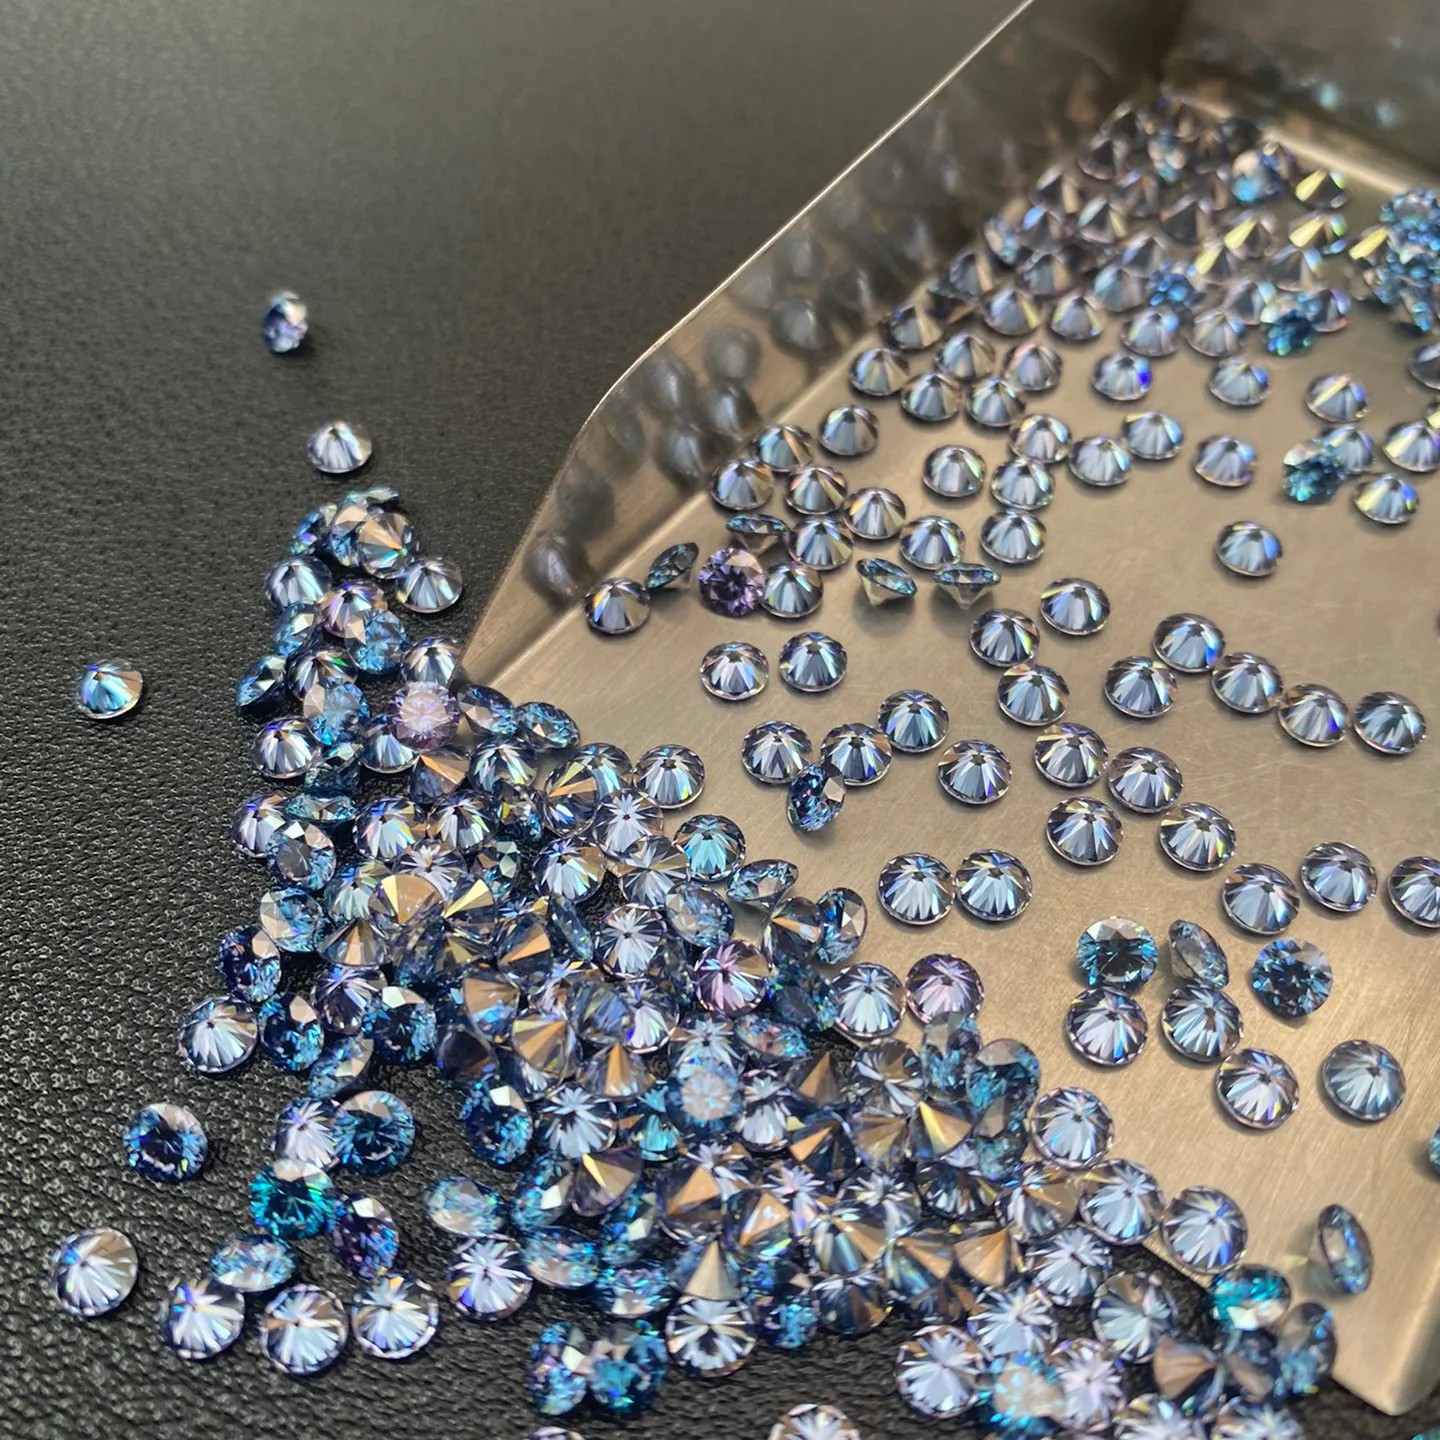 Lose blaue Moissan ite Diamanten VVS Klarheit 4mm runder Moissan ite Blue Synthetic Diamond für die Schmuck markierung